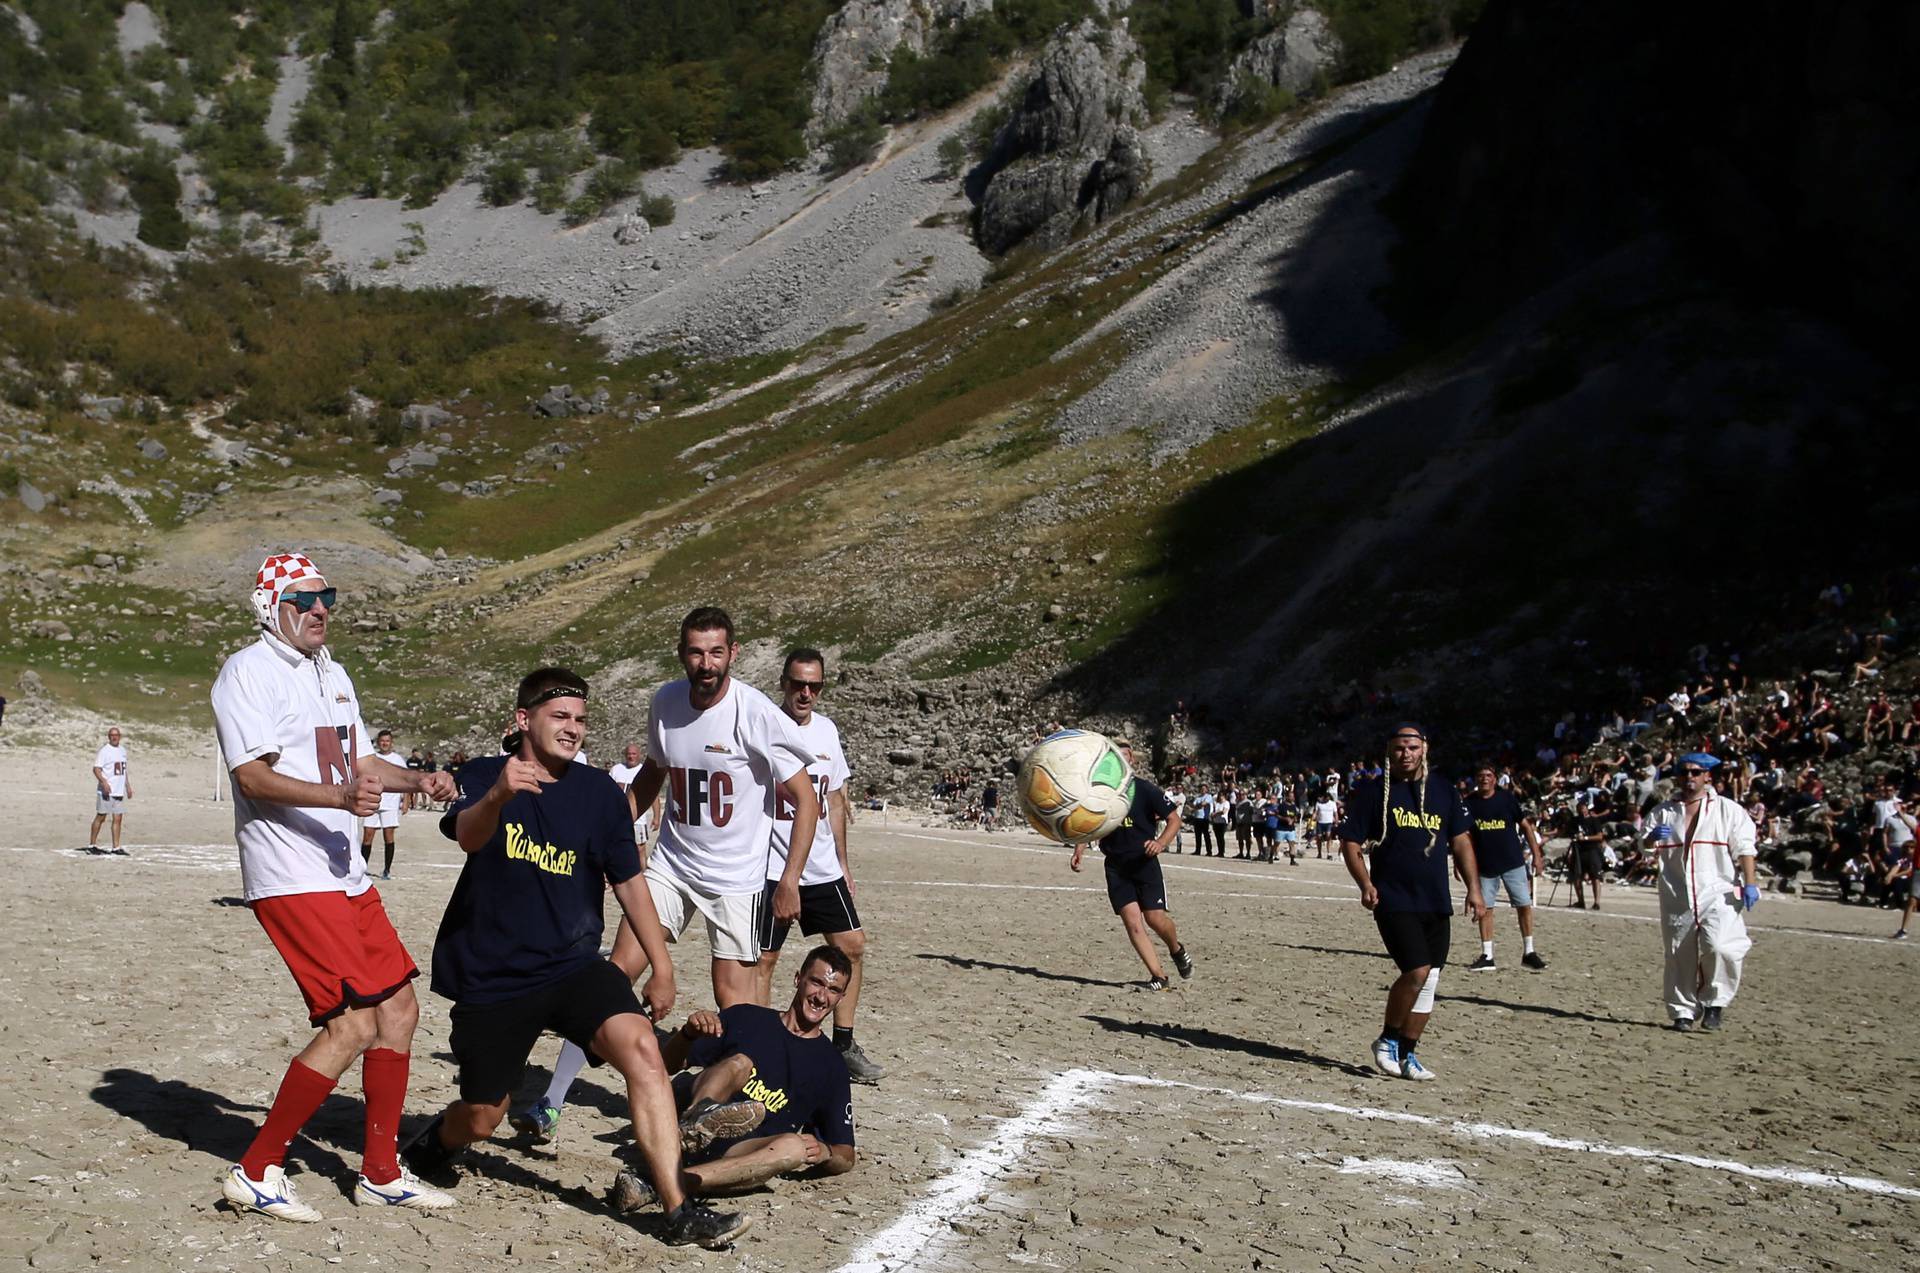 Imotski: Nogometna utakmica na dnu isušenog modrog jezera između Vukodlaka i Vilenjaka